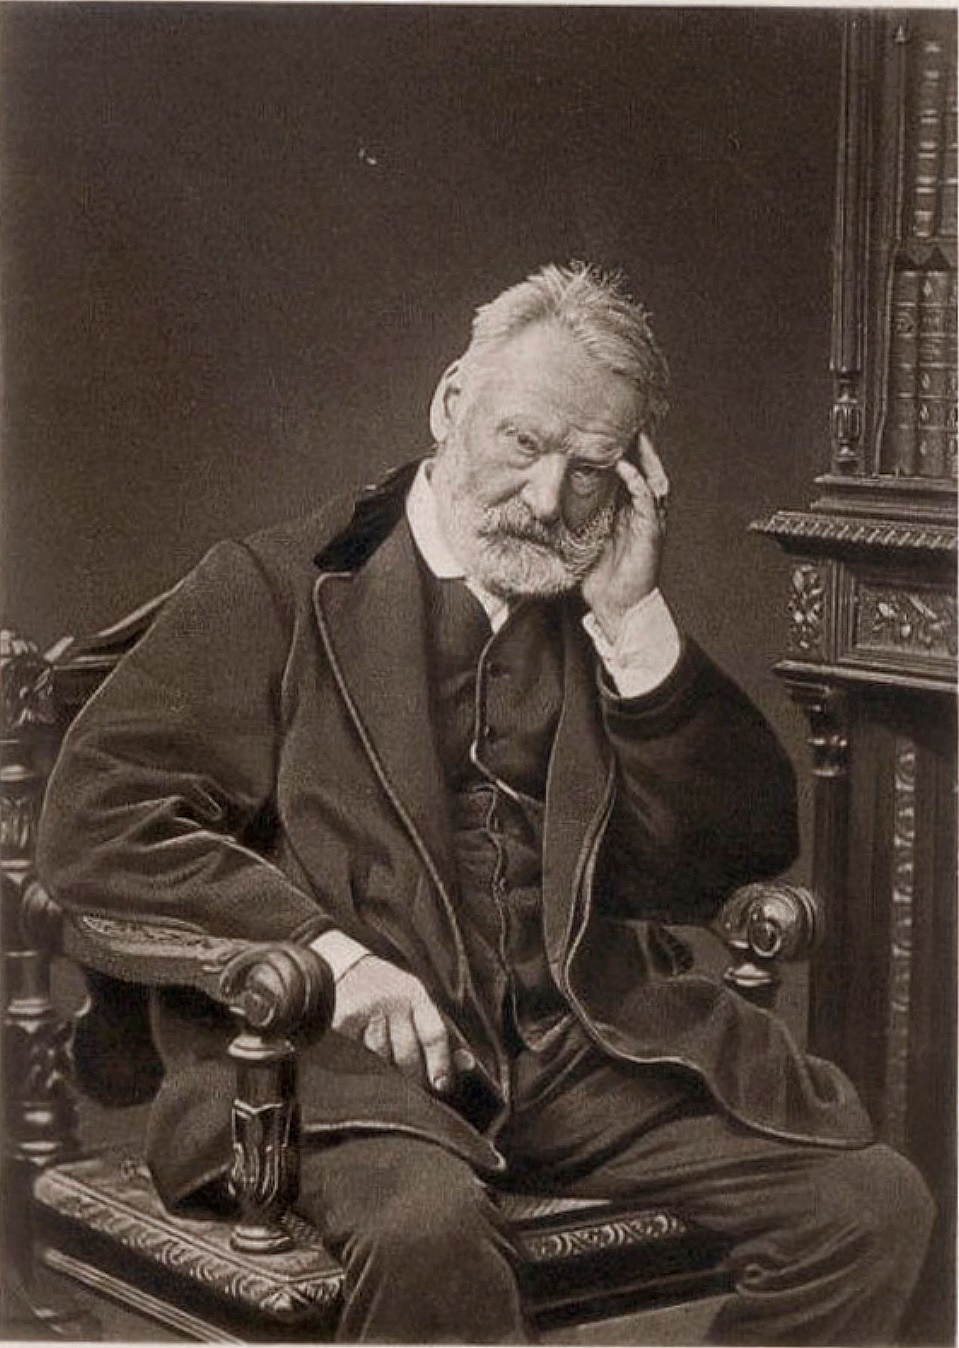 Dexedrina: Victor Hugo (retratos)